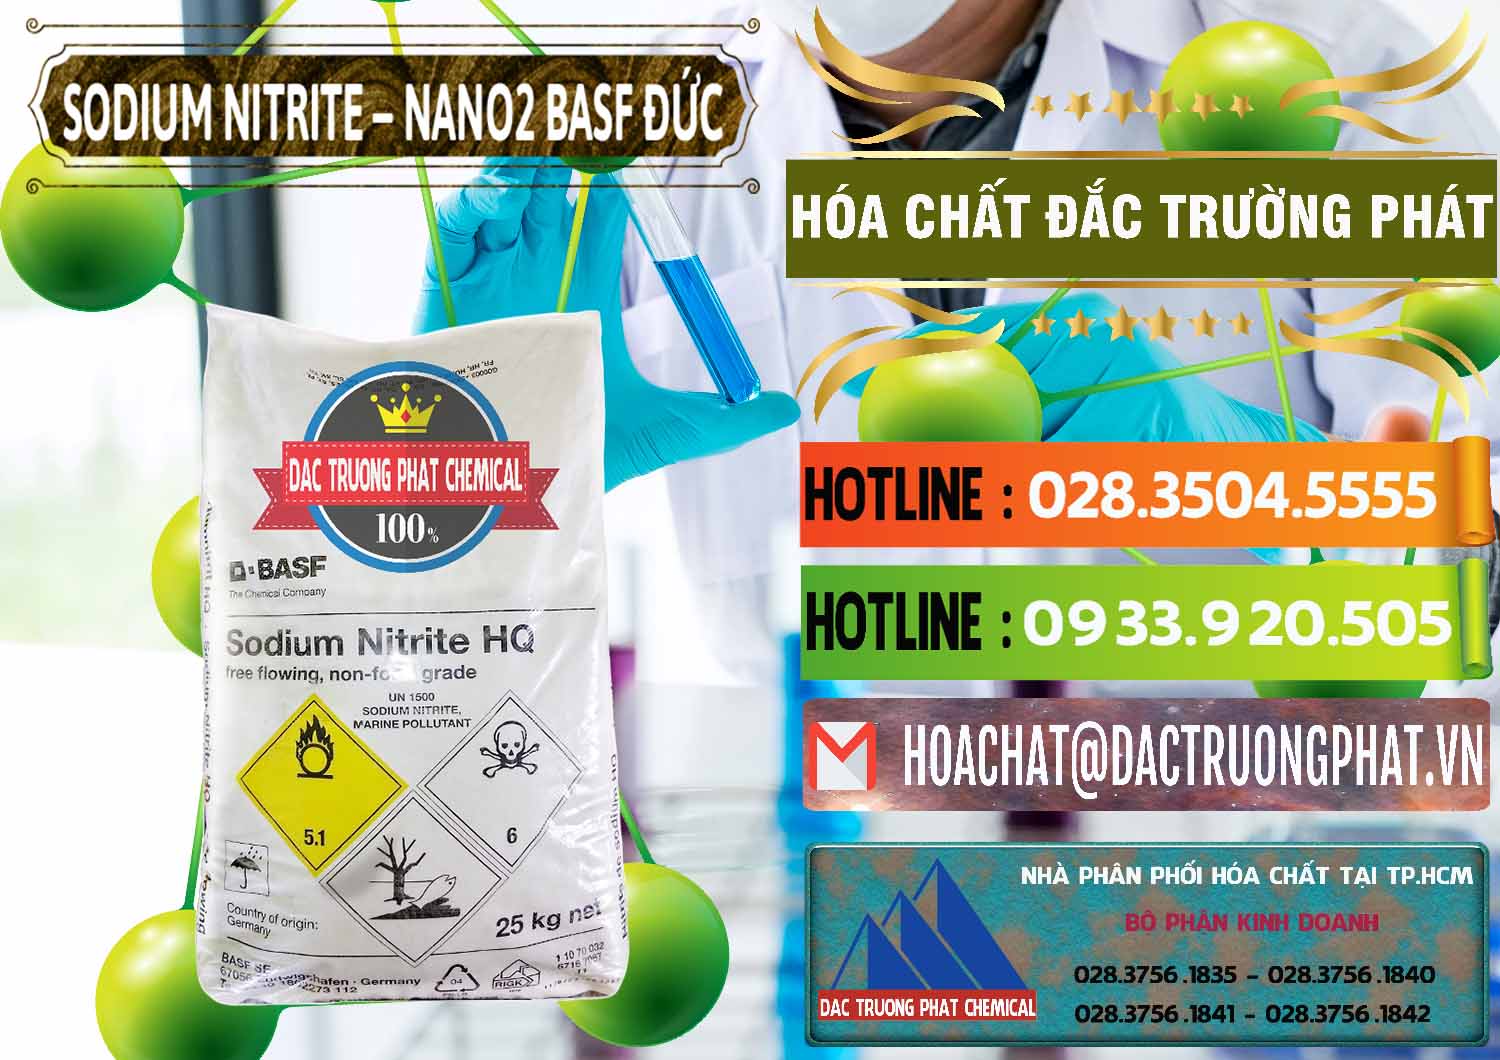 Đơn vị chuyên bán và phân phối Sodium Nitrite - NANO2 Đức BASF Germany - 0148 - Đơn vị chuyên bán ( phân phối ) hóa chất tại TP.HCM - cungcaphoachat.com.vn